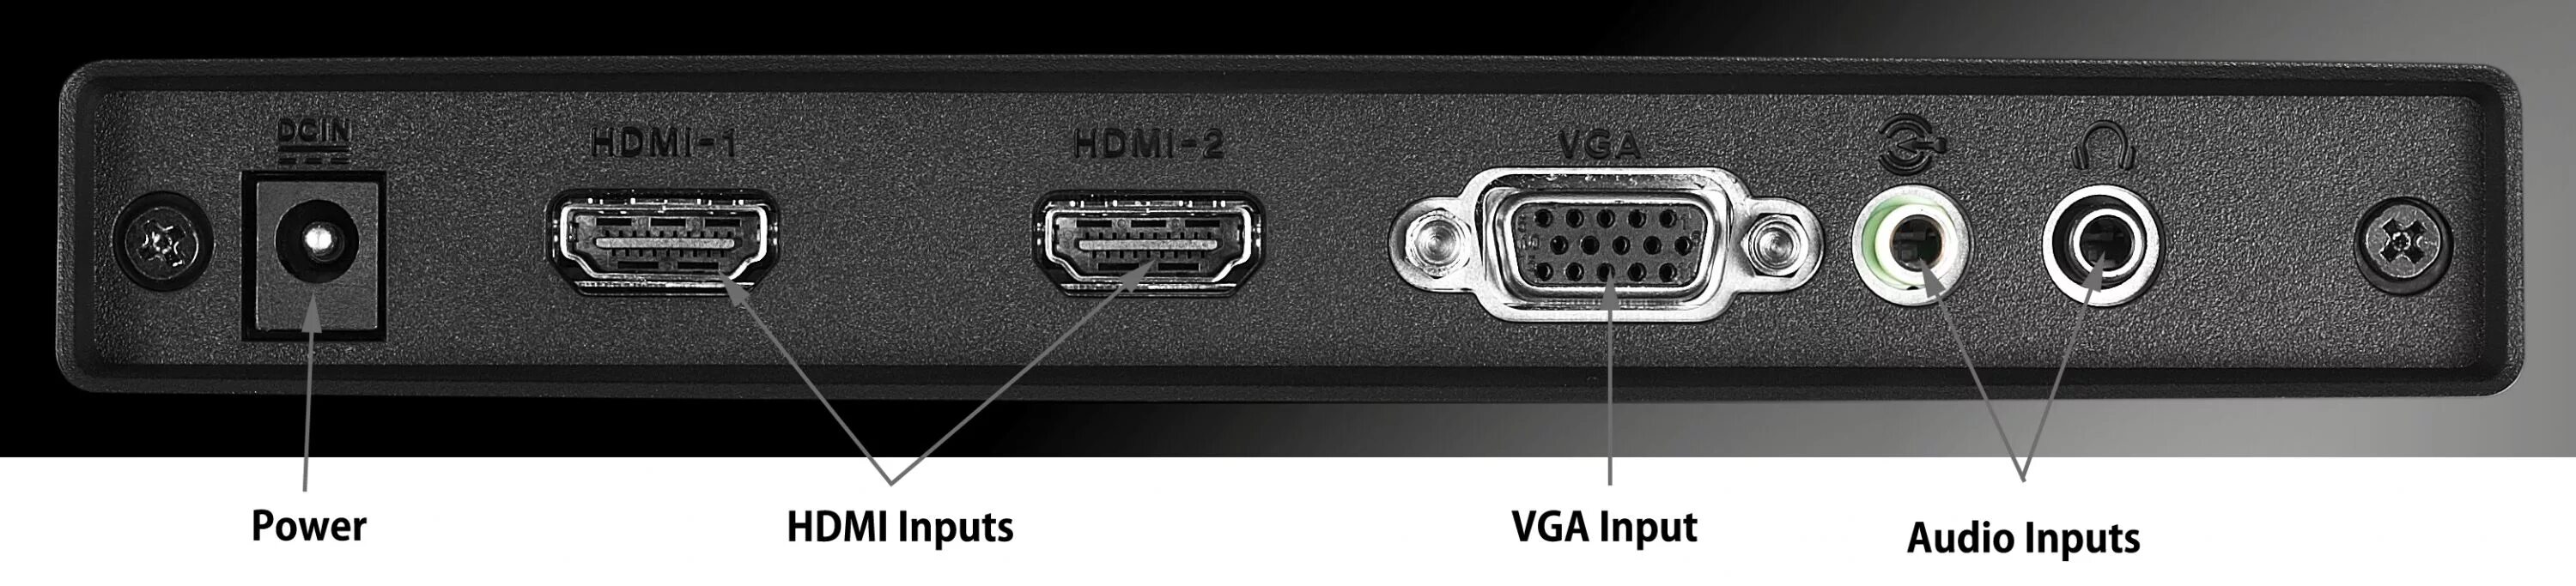 Выход на монитор. Монитор ASUS Designo 23" mx239h. Dell мониторы 27 разъем HDMI. Монитор 10 дюймов HDMI in-out. Разъем 2 HDM ТВ.